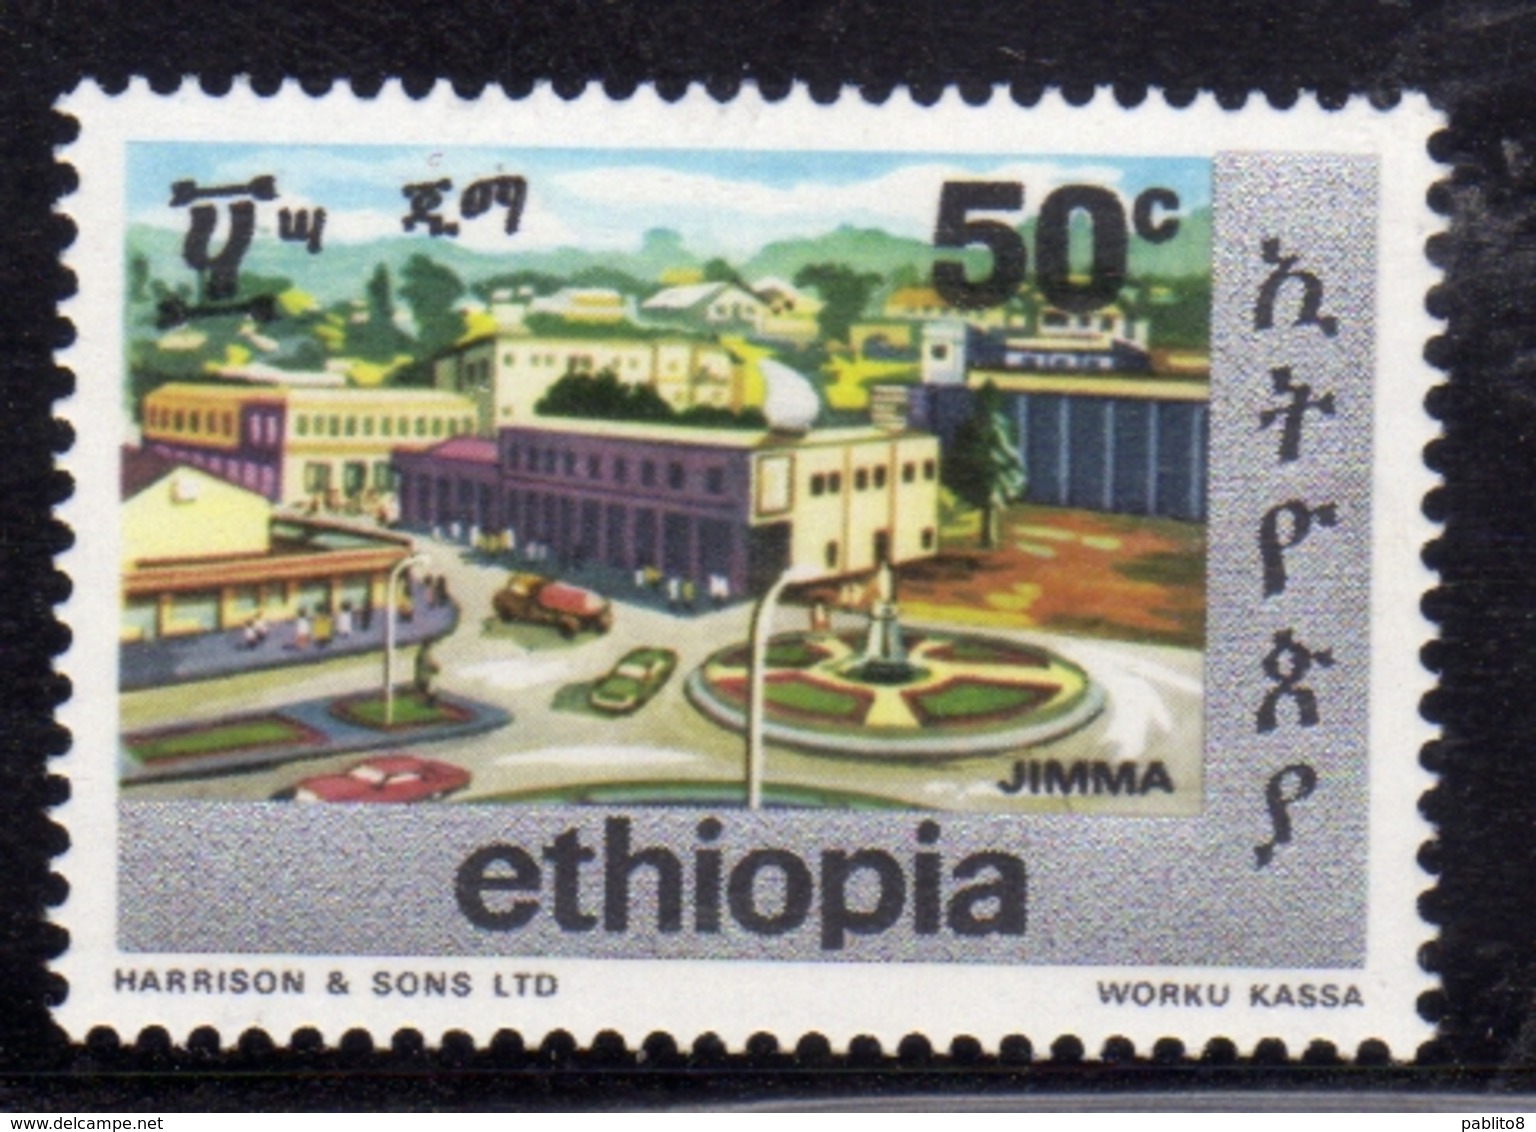 ETHIOPIA ETIOPIA ETHIOPIE 1977 TOWNS OF ADDIS JIMA CENT. 50c MNH - Etiopia